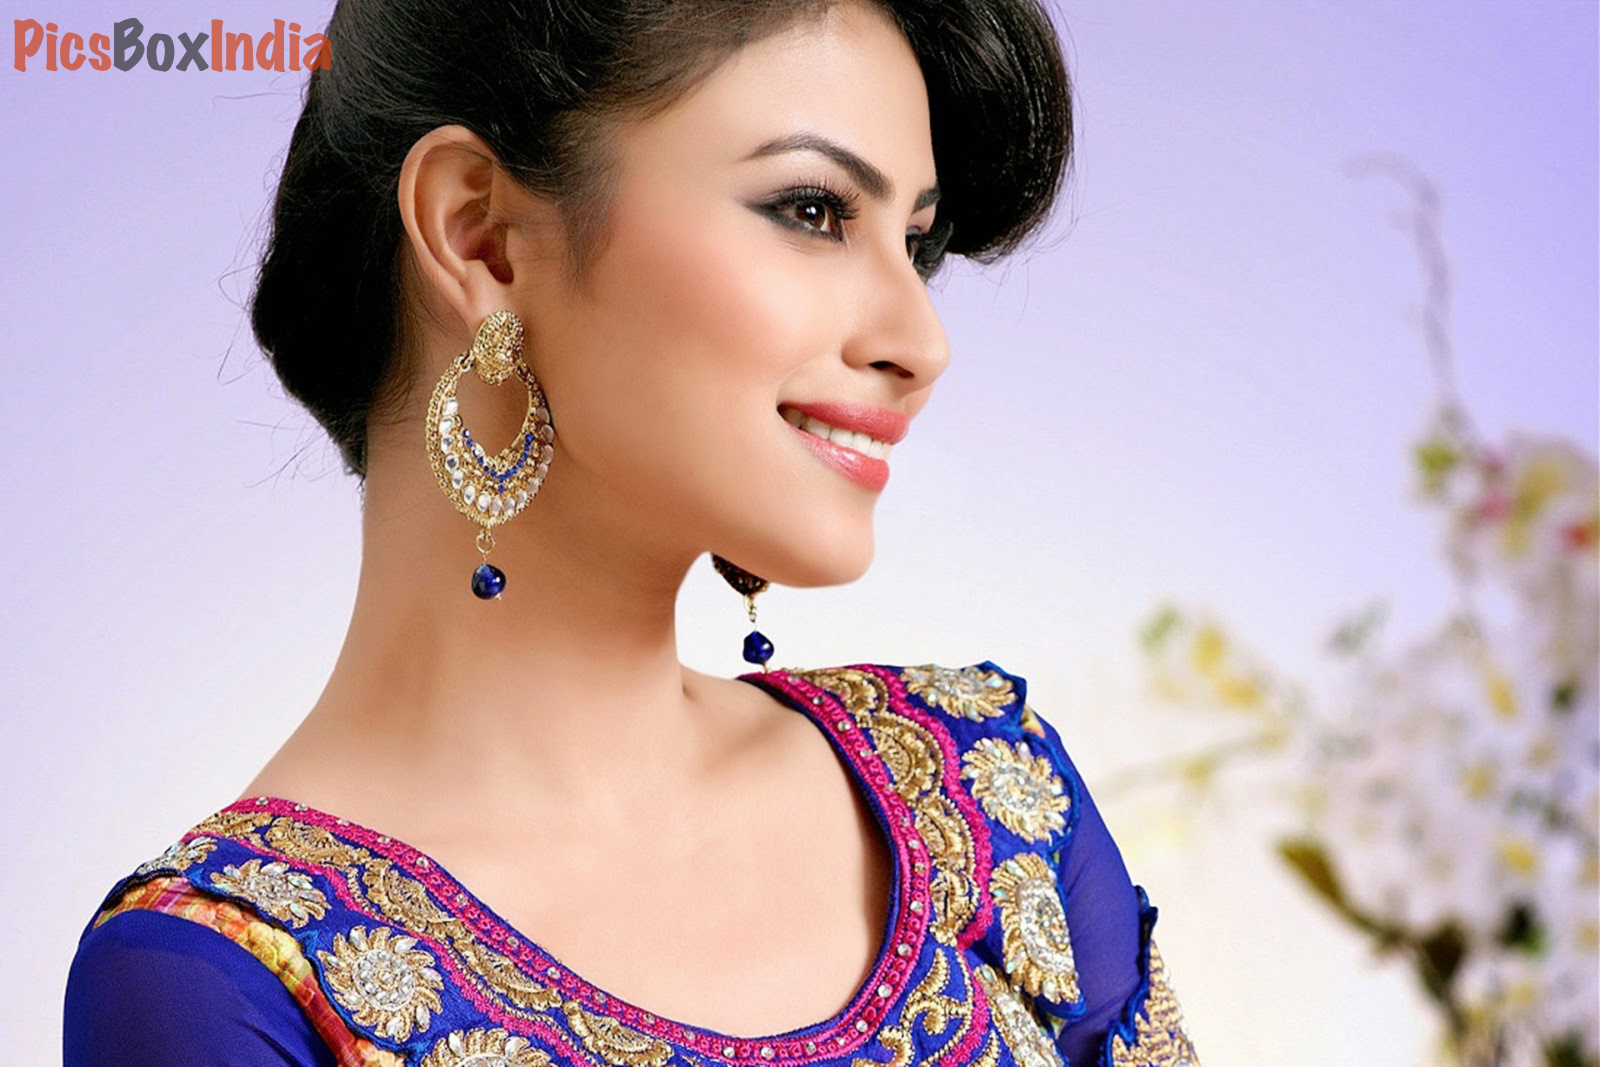 Tv Actress Mouni Roy 29 Beautiful And Hot Photos Download Indian Celebrities Hd Photos And